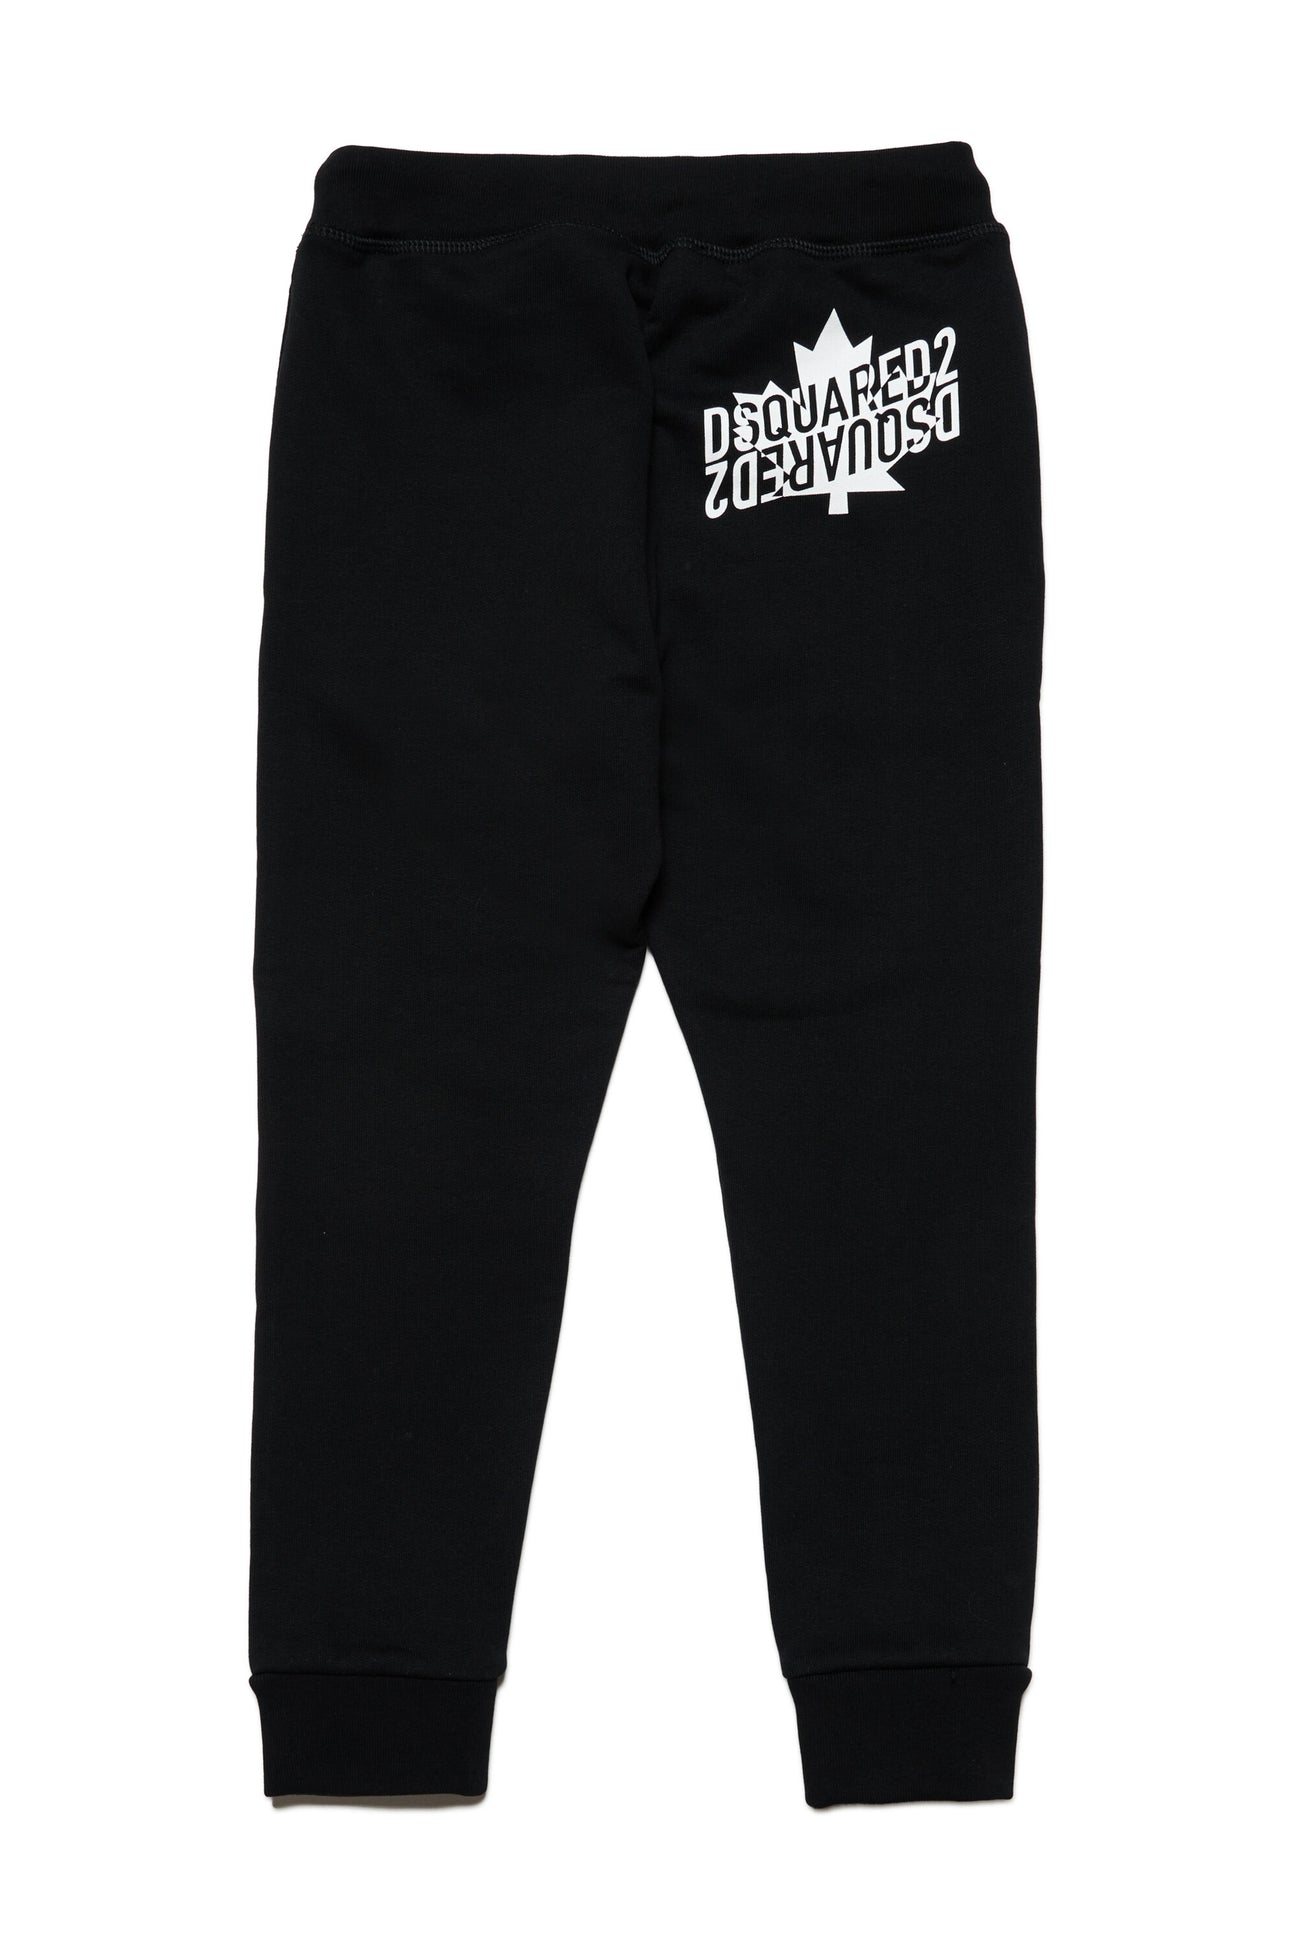 Pantalones deportivos de felpa con logotipo espejado Pantalones deportivos de felpa con logotipo espejado